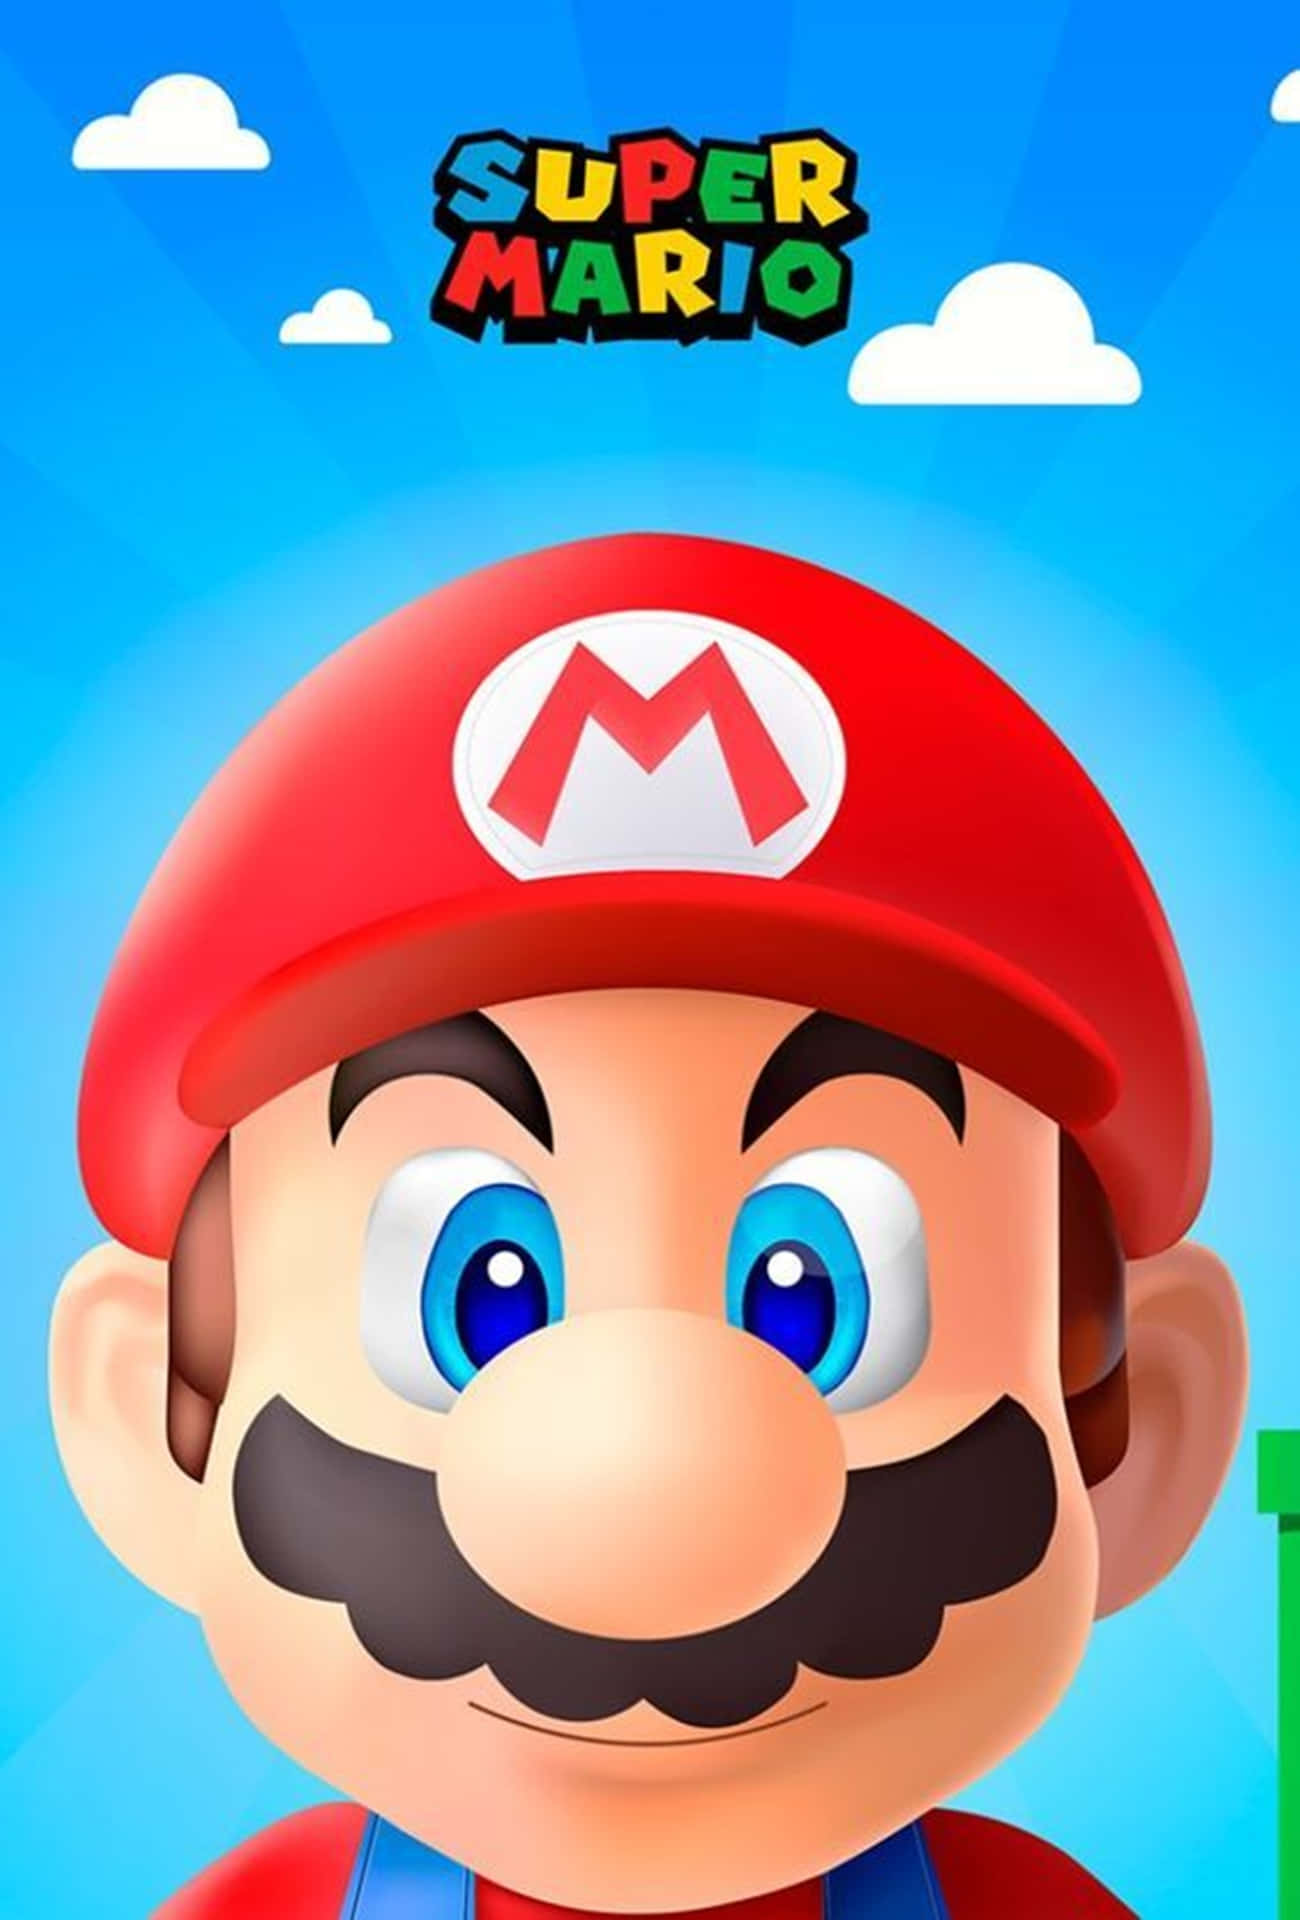 Erlebensie Den Spaß Von Super Mario Auf Ihrem Iphone! Wallpaper